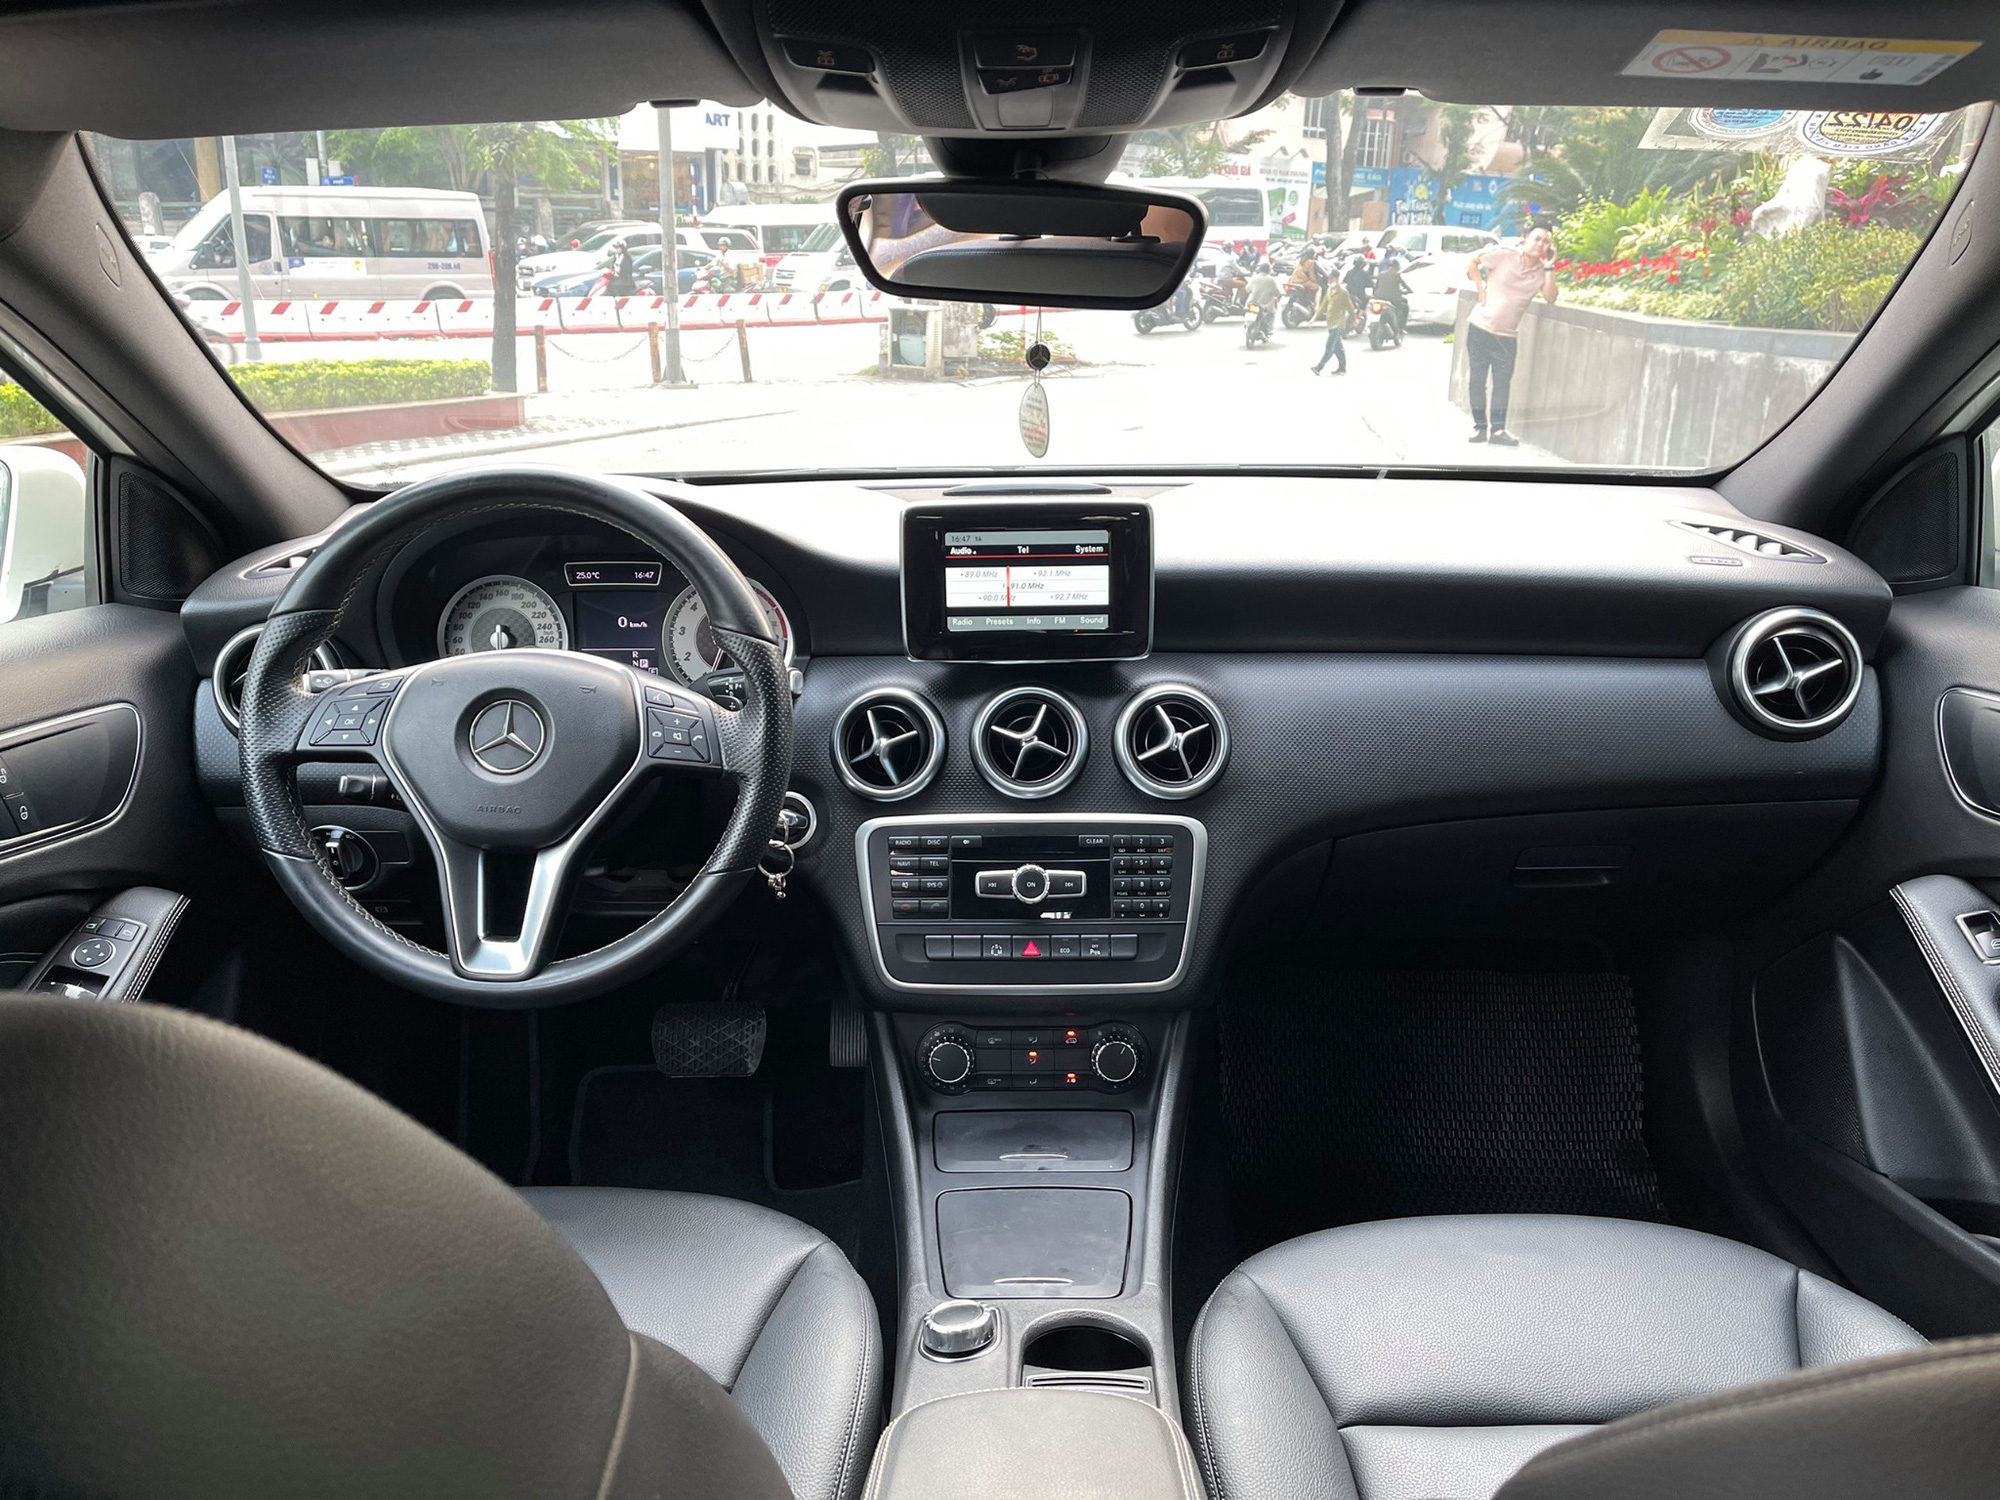 Mới chạy 50.000km, chiếc Mercedes-Benz nhập khẩu này có giá thấp hơn cả Toyota Yaris - Ảnh 3.